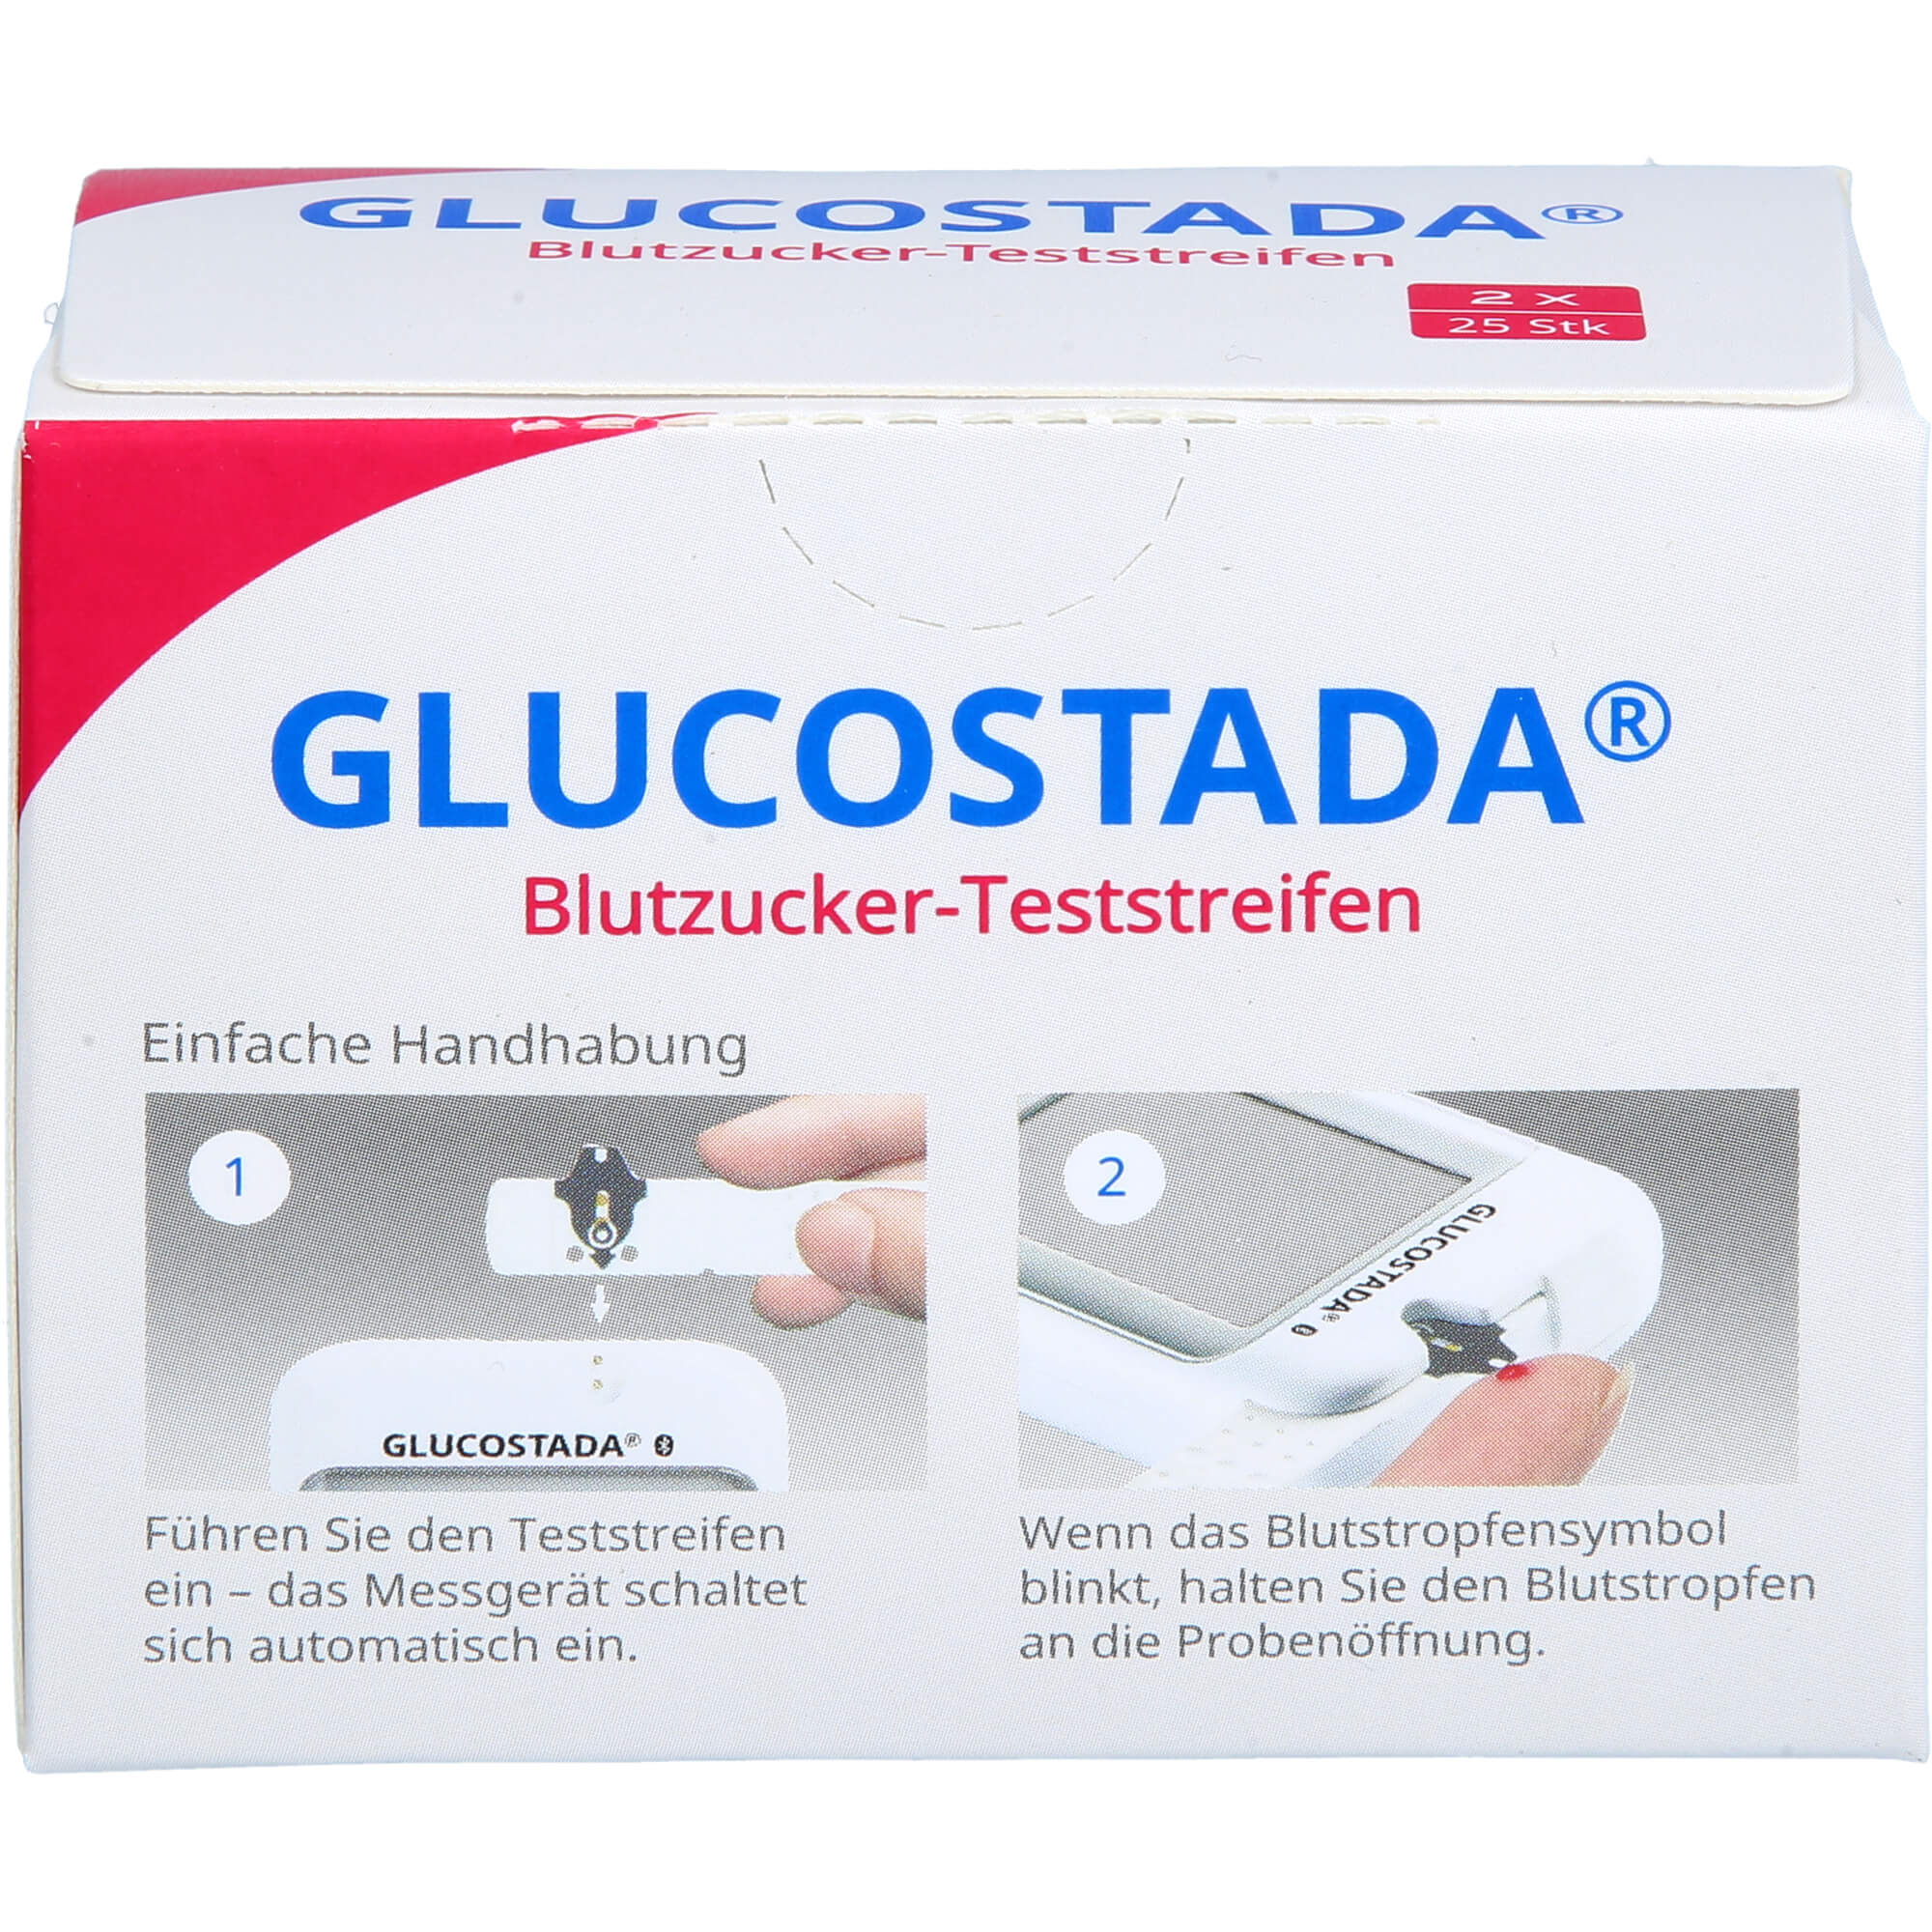 GLUCOSTADA Blutzuckerteststreifen